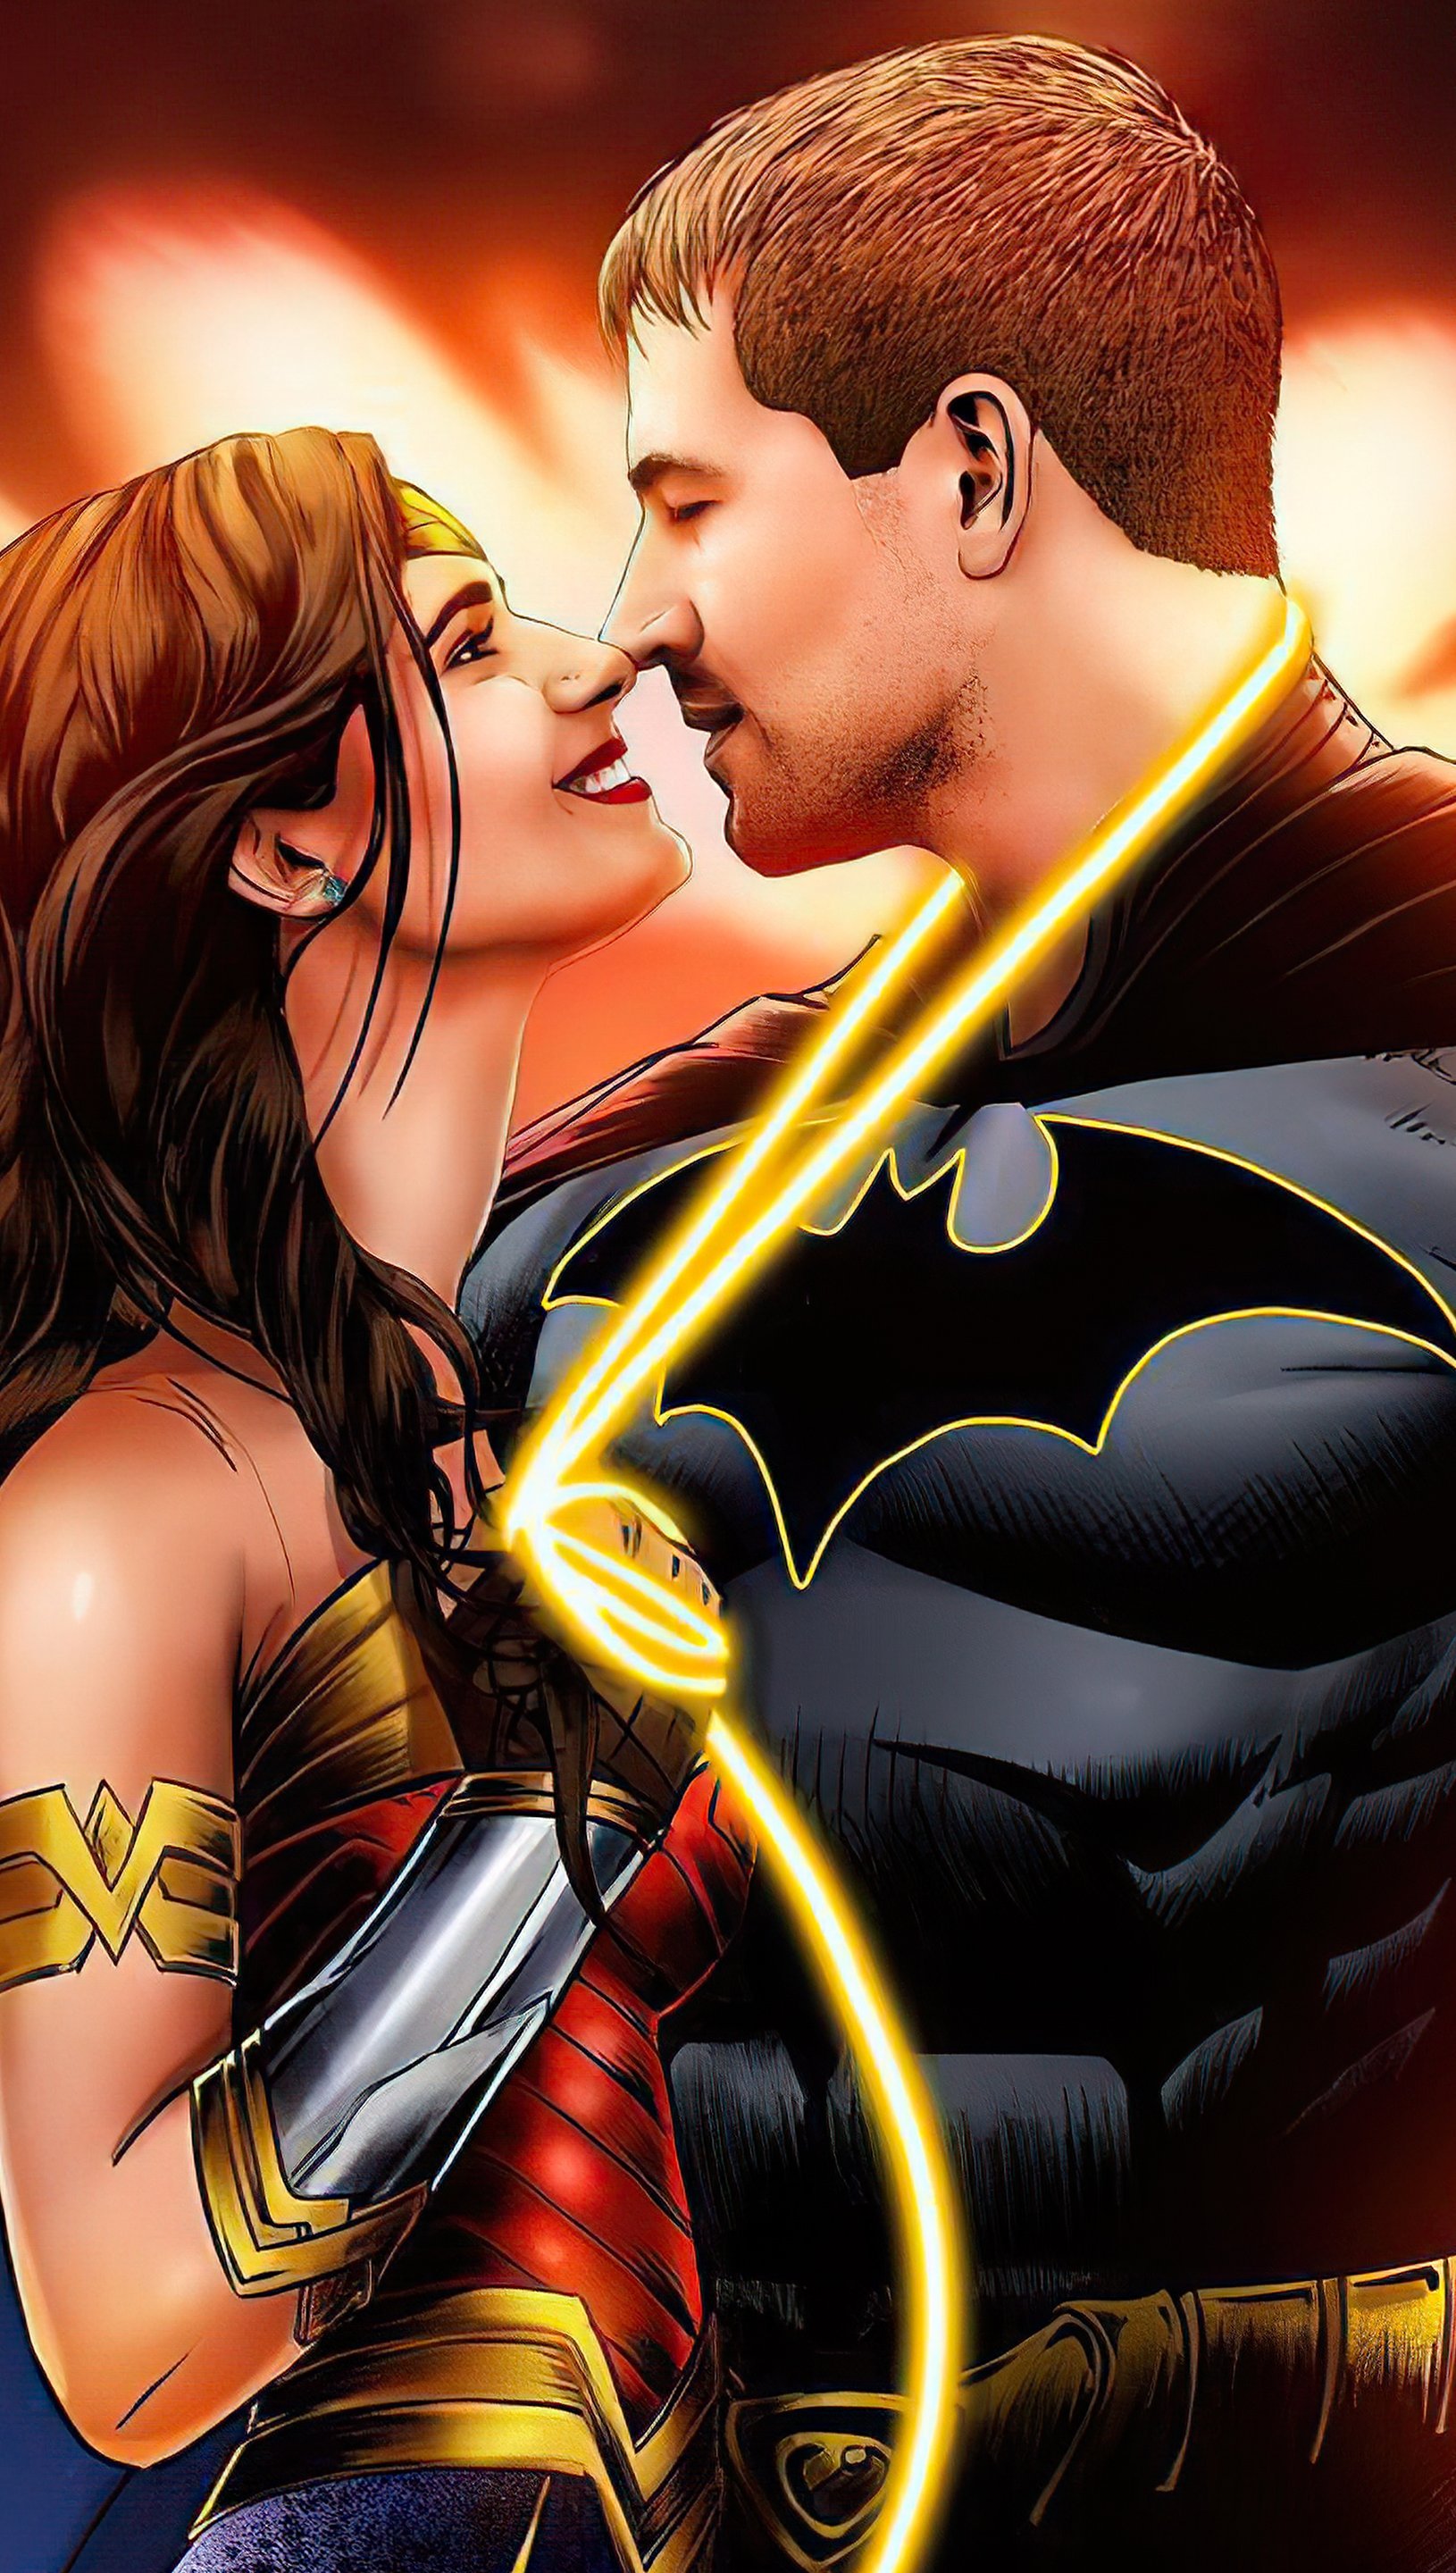 Fondos de pantalla Batman y La mujer maravilla enamorados Vertical